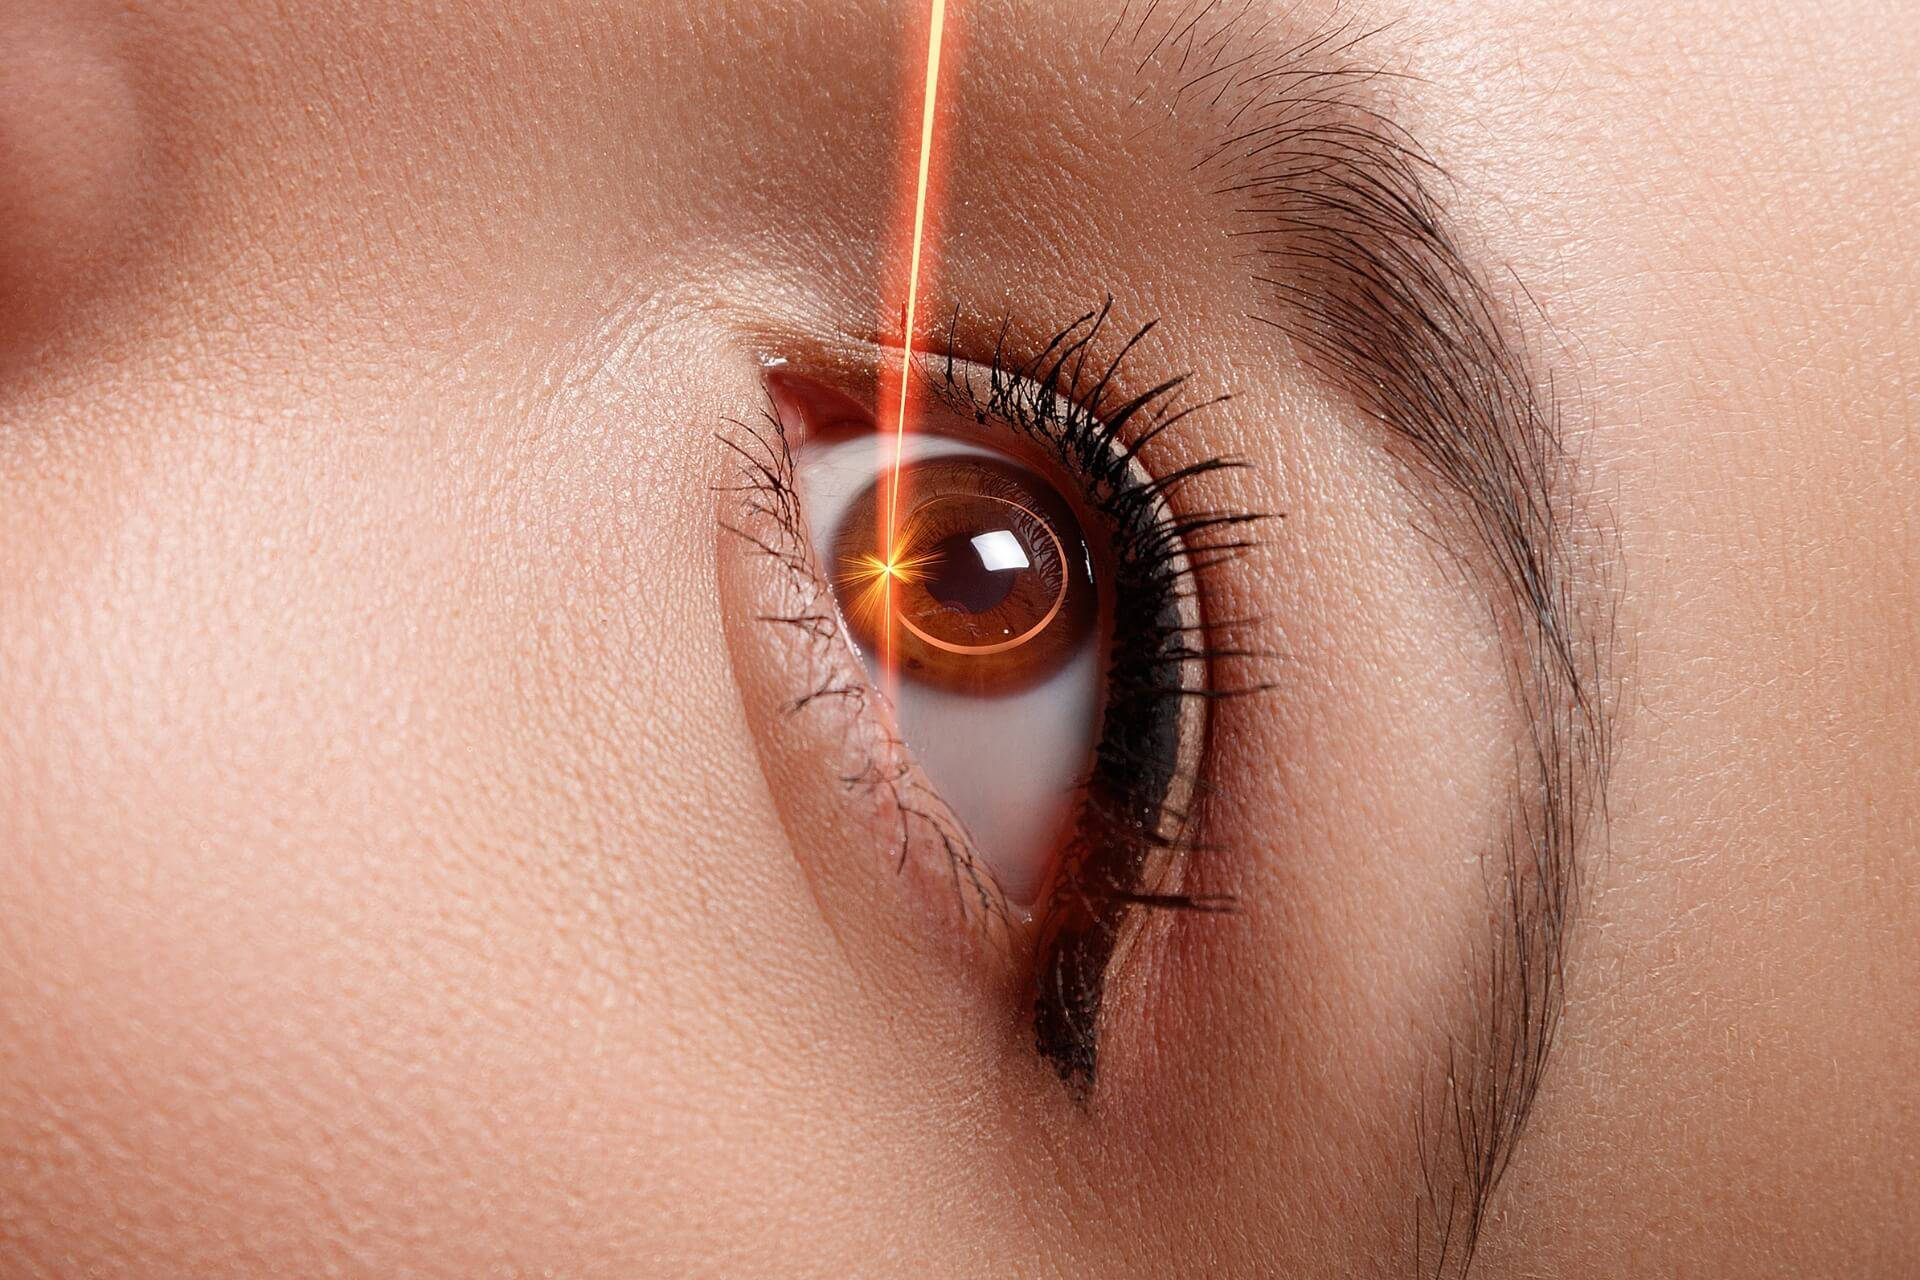 chirurgia laser per risolvere la miopia e difetti visivi